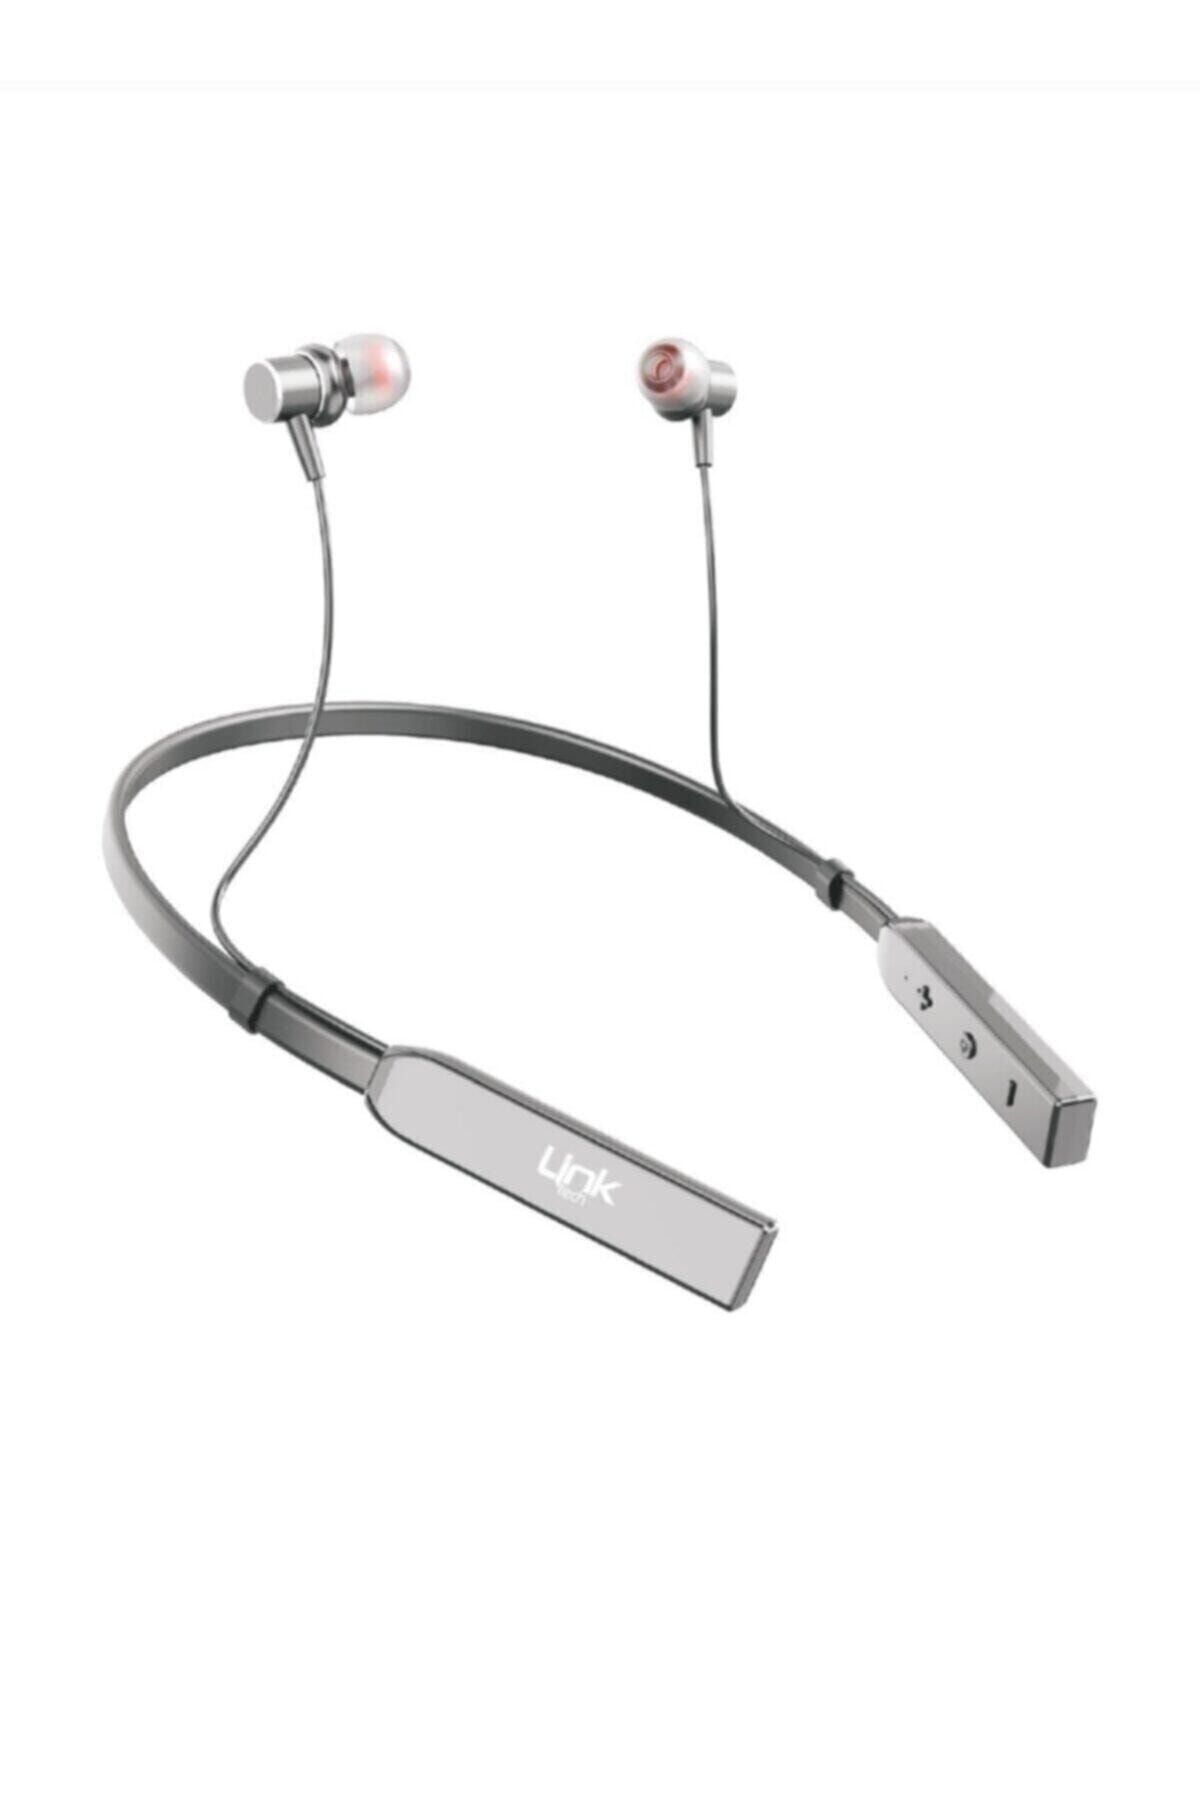 Linktech Boyun Askılı Kulak İçi Bluetooth Kulaklık H980